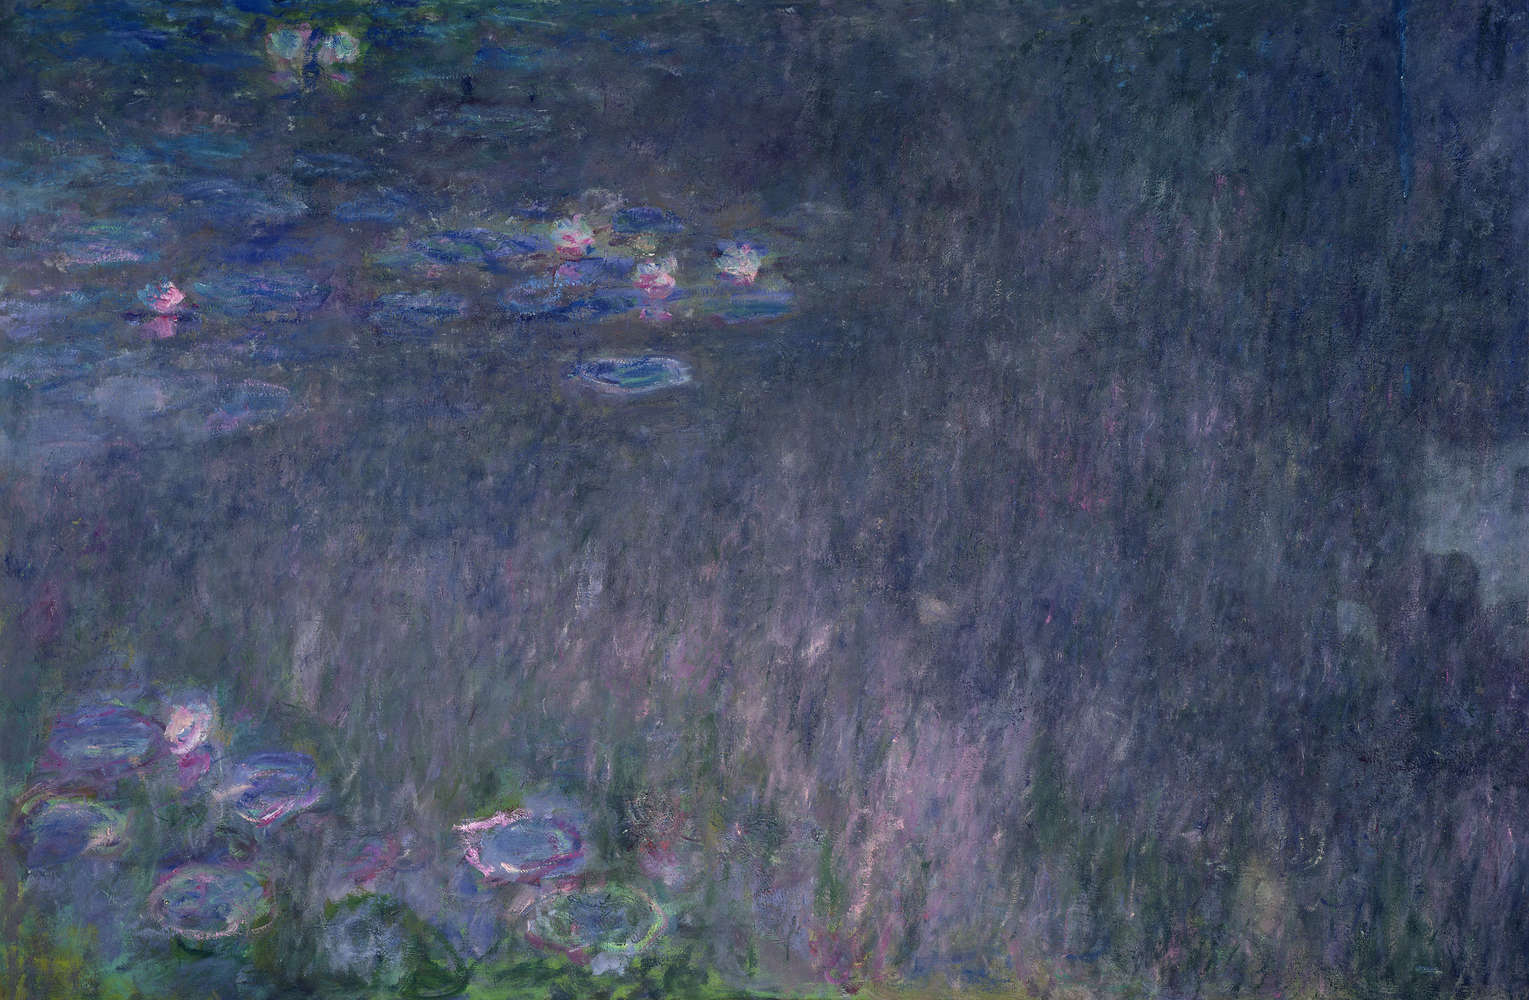             Ninfee: riflesso degli alberi" murale di Claude Monet
        